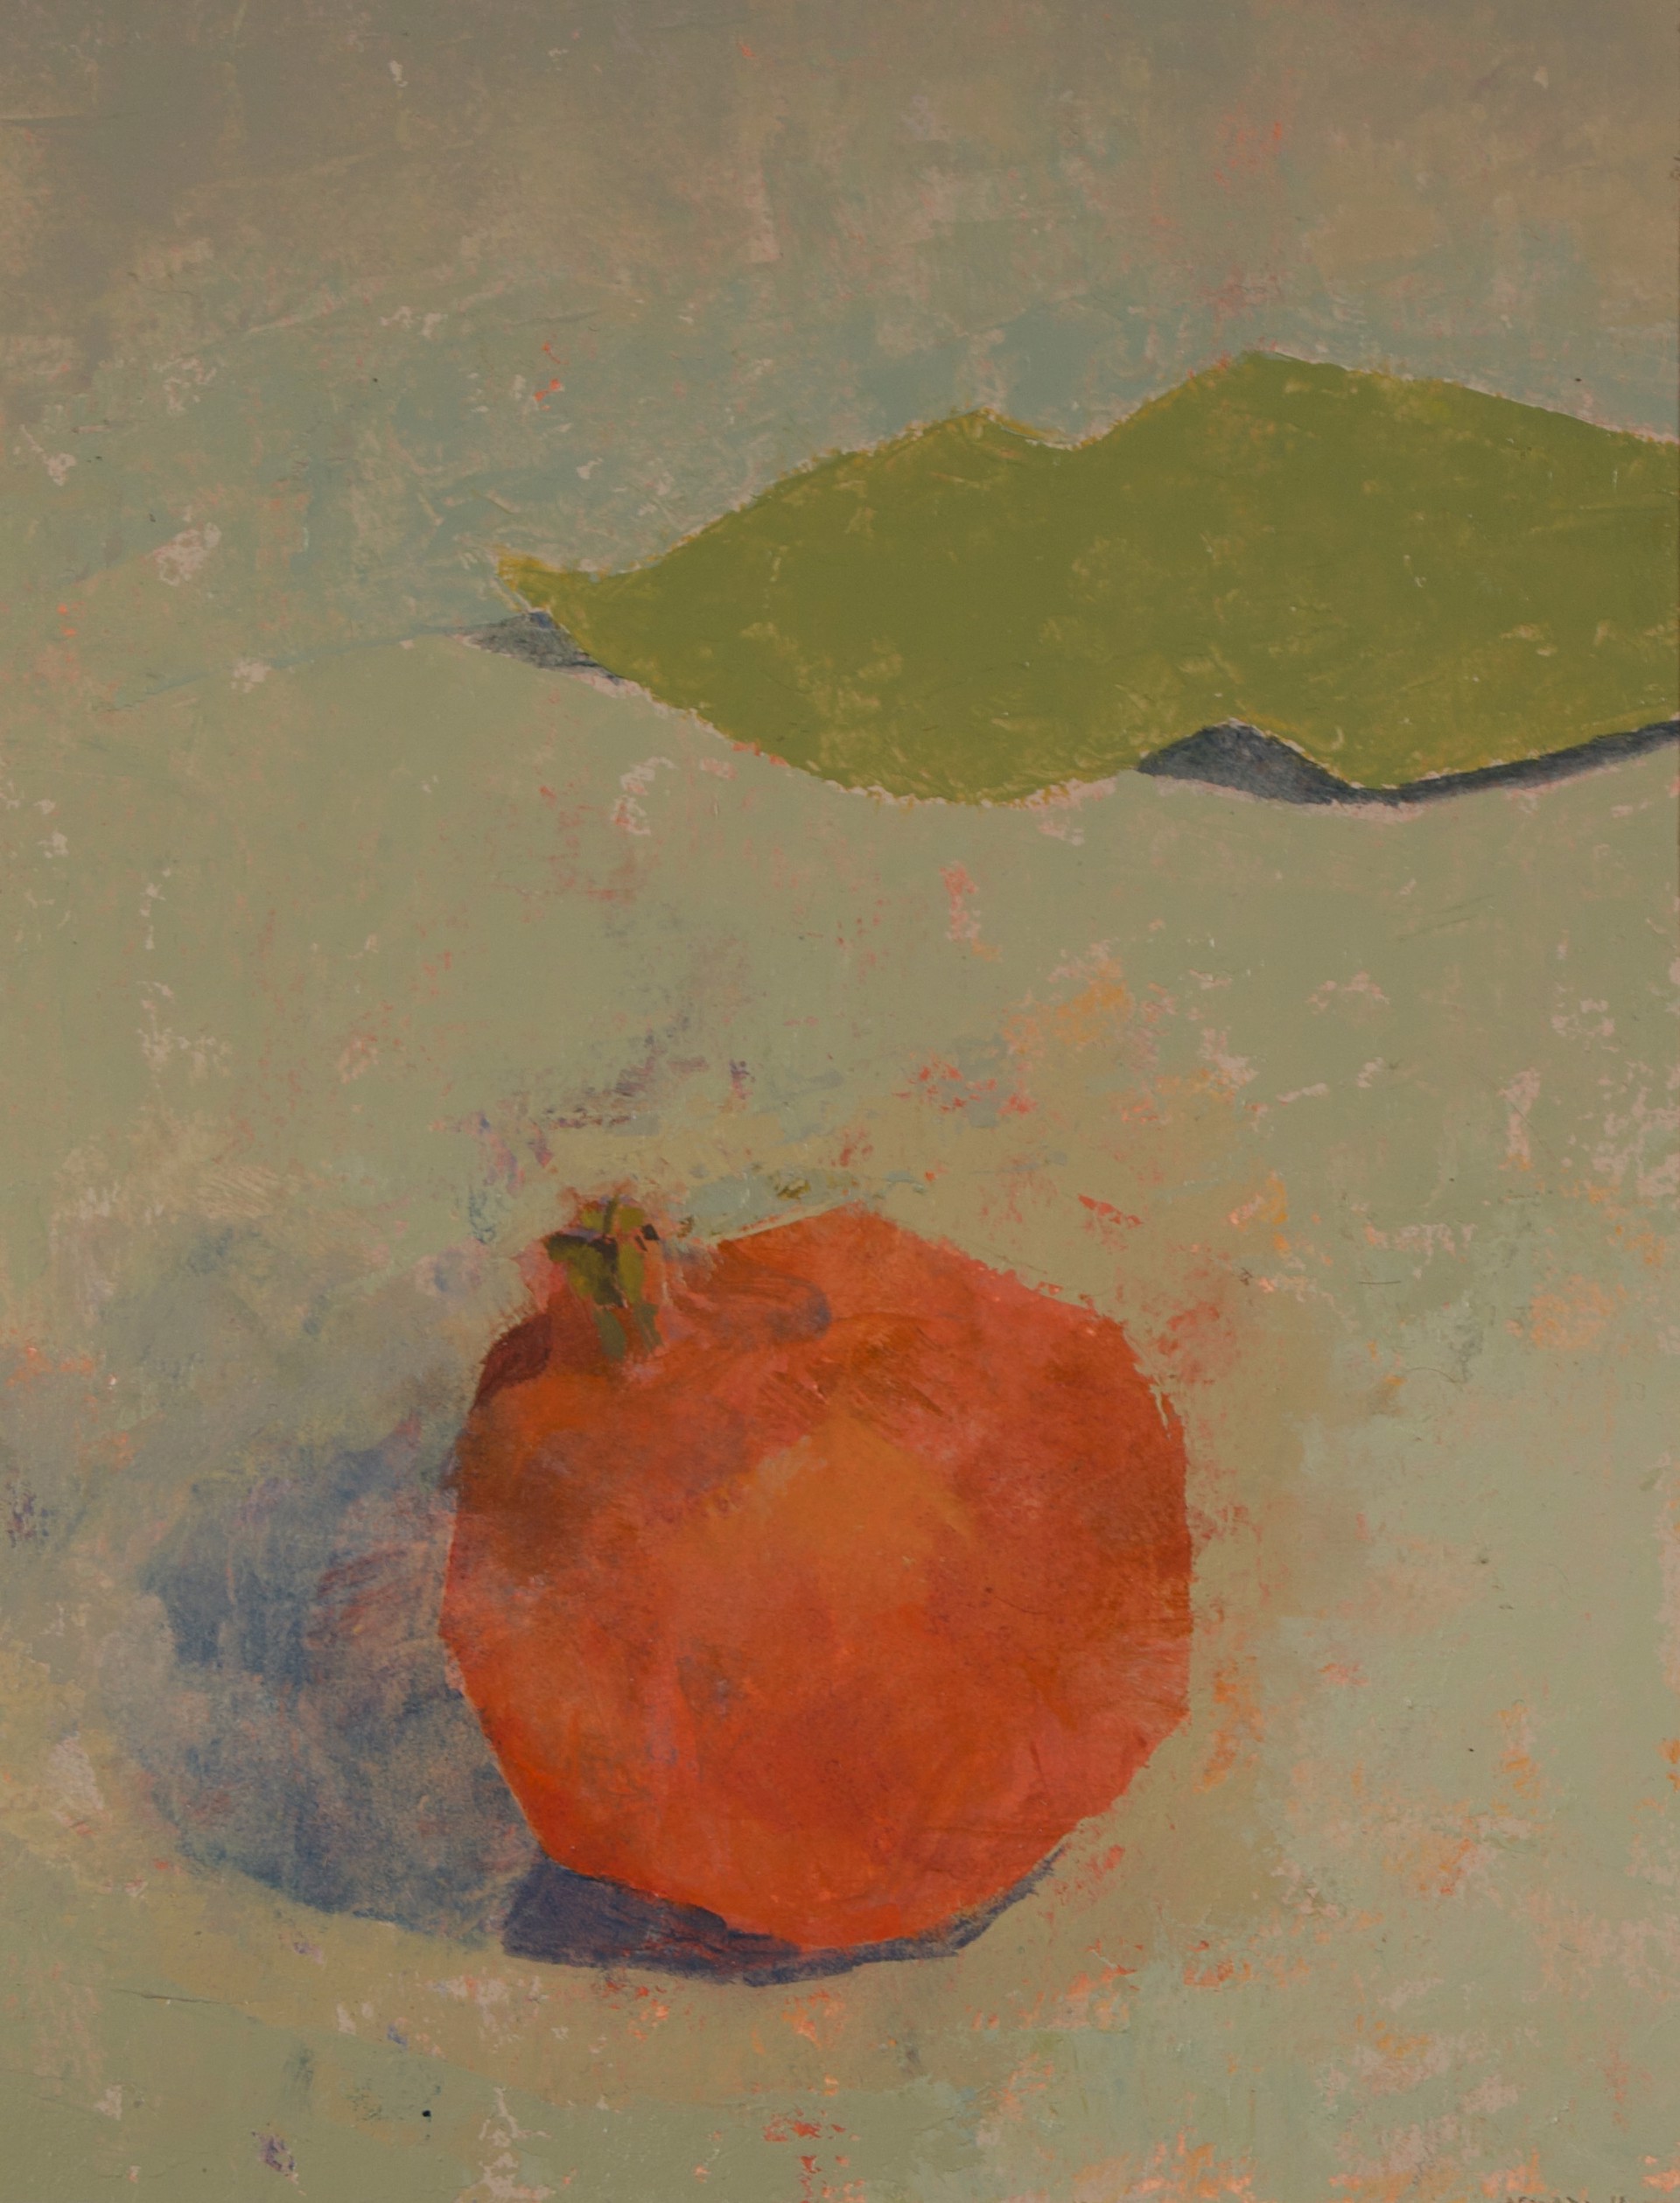 Pomegranate & Magnolia by Chris Liberti